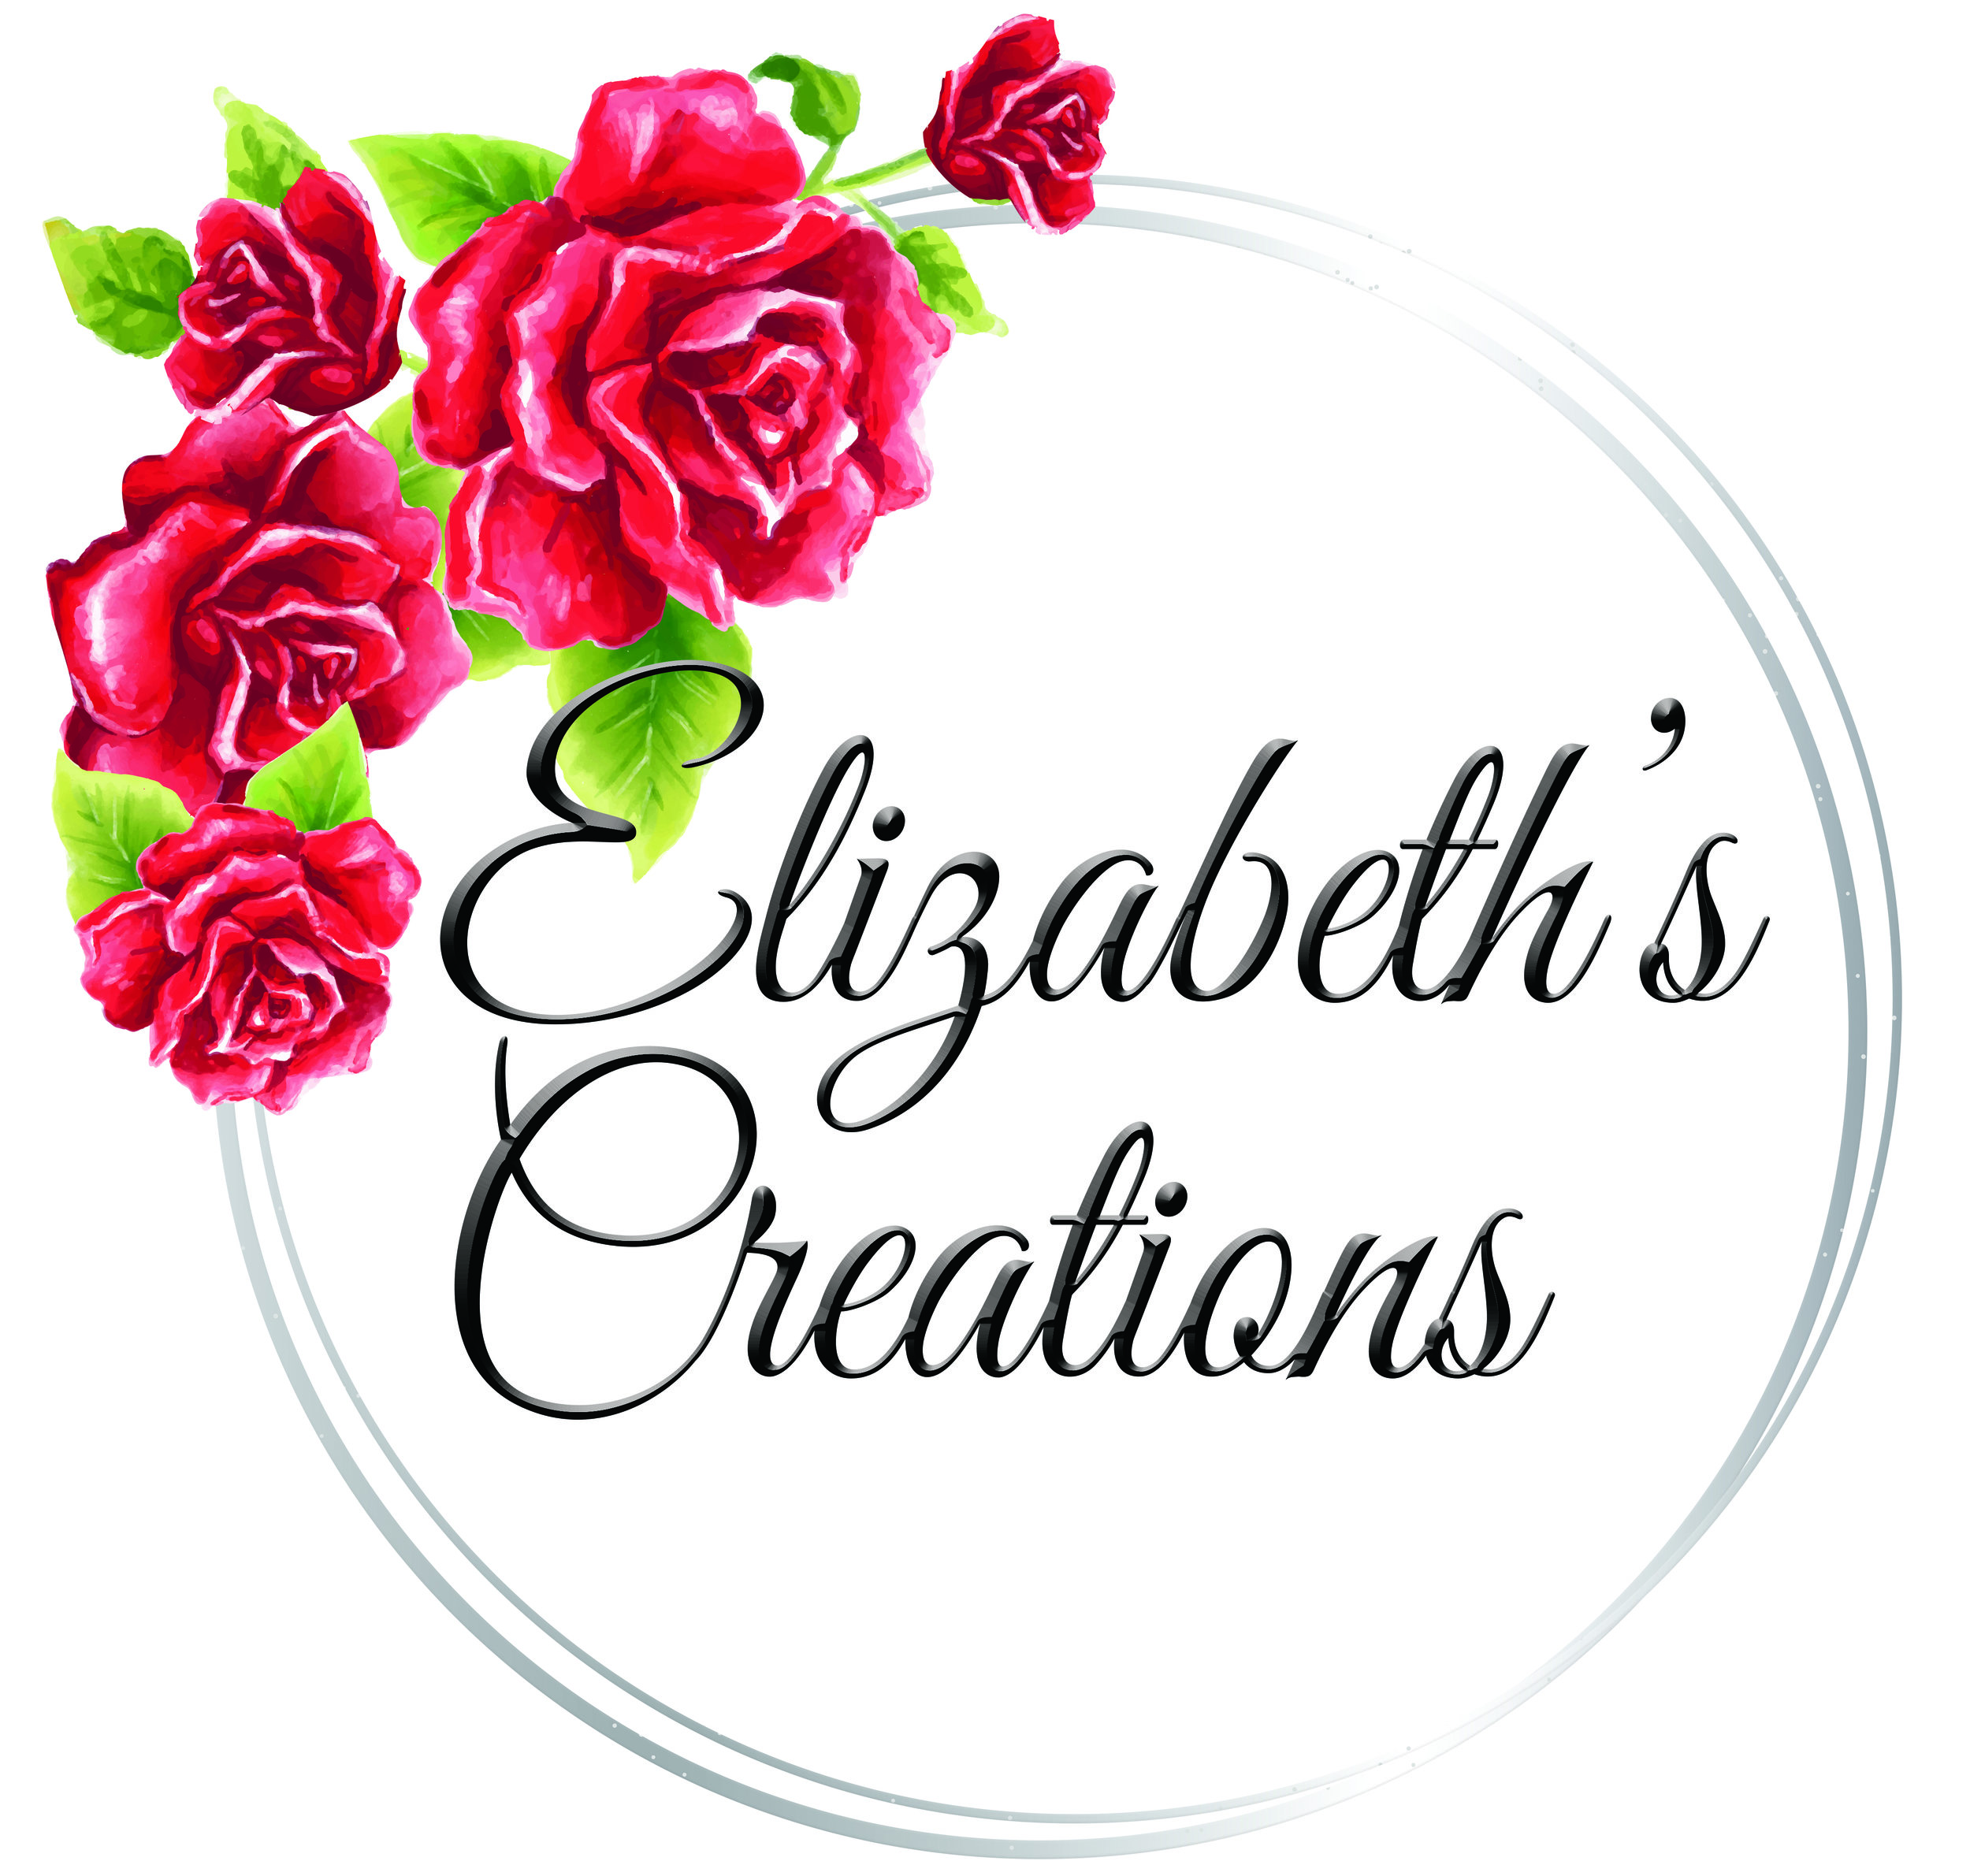 Elizabeths Creations logo final  cmyk.jpg